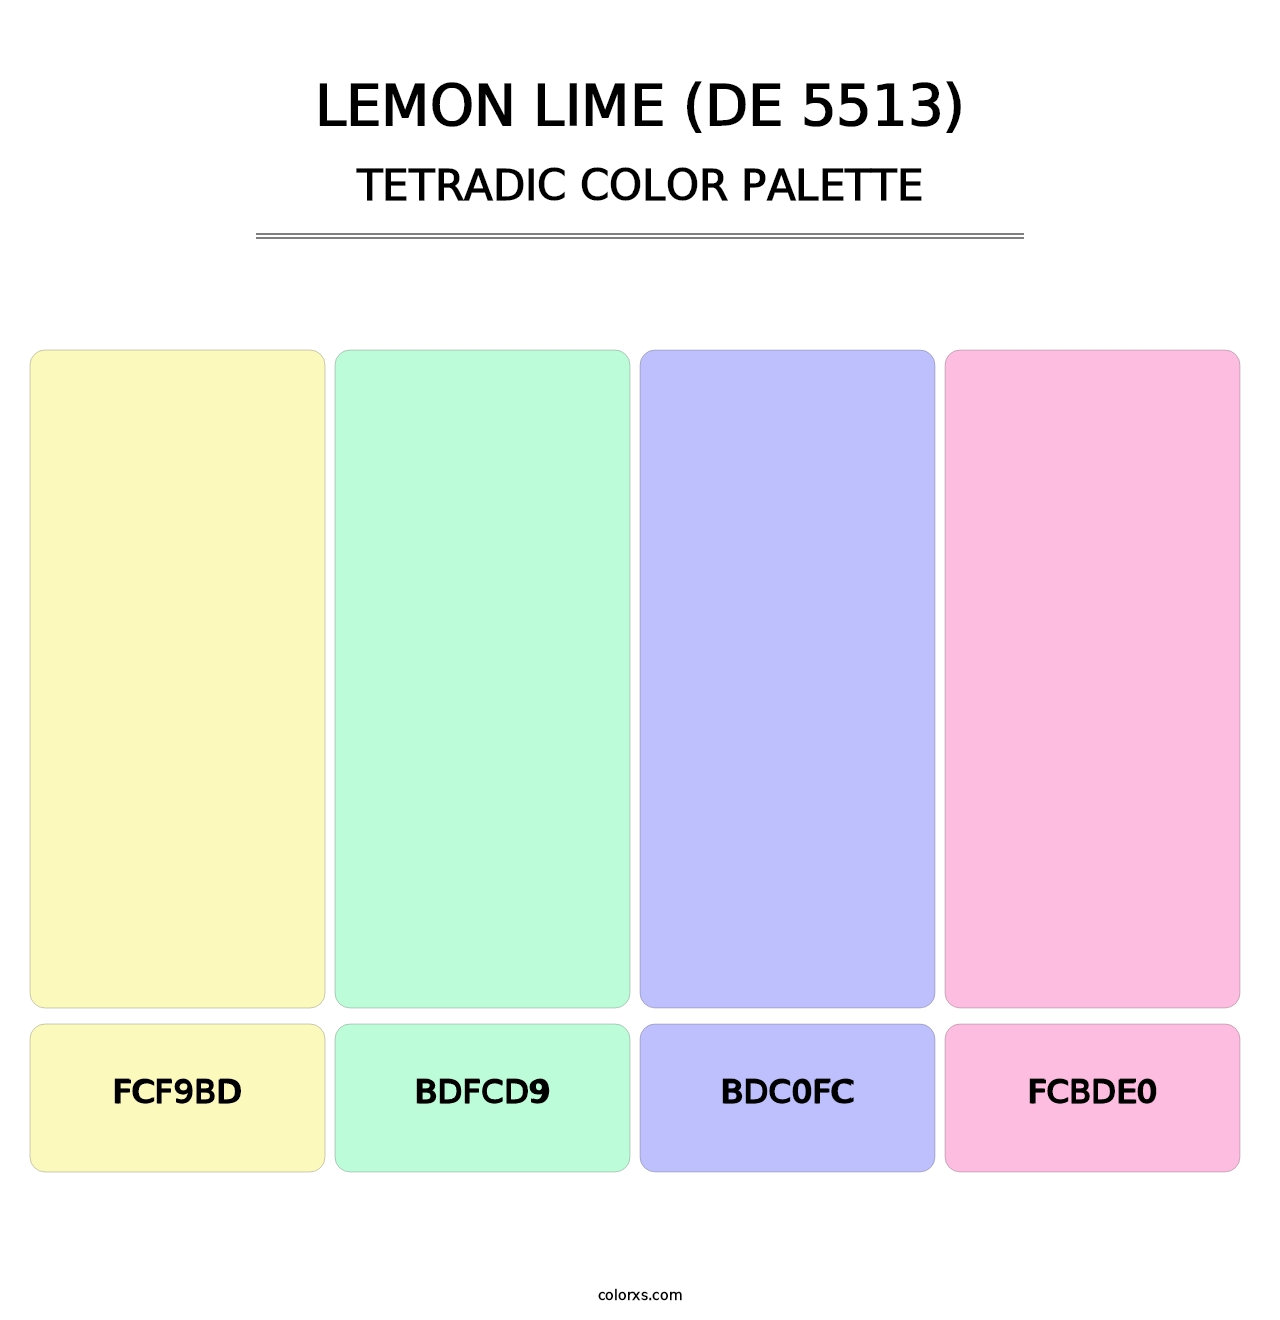 Lemon Lime (DE 5513) - Tetradic Color Palette